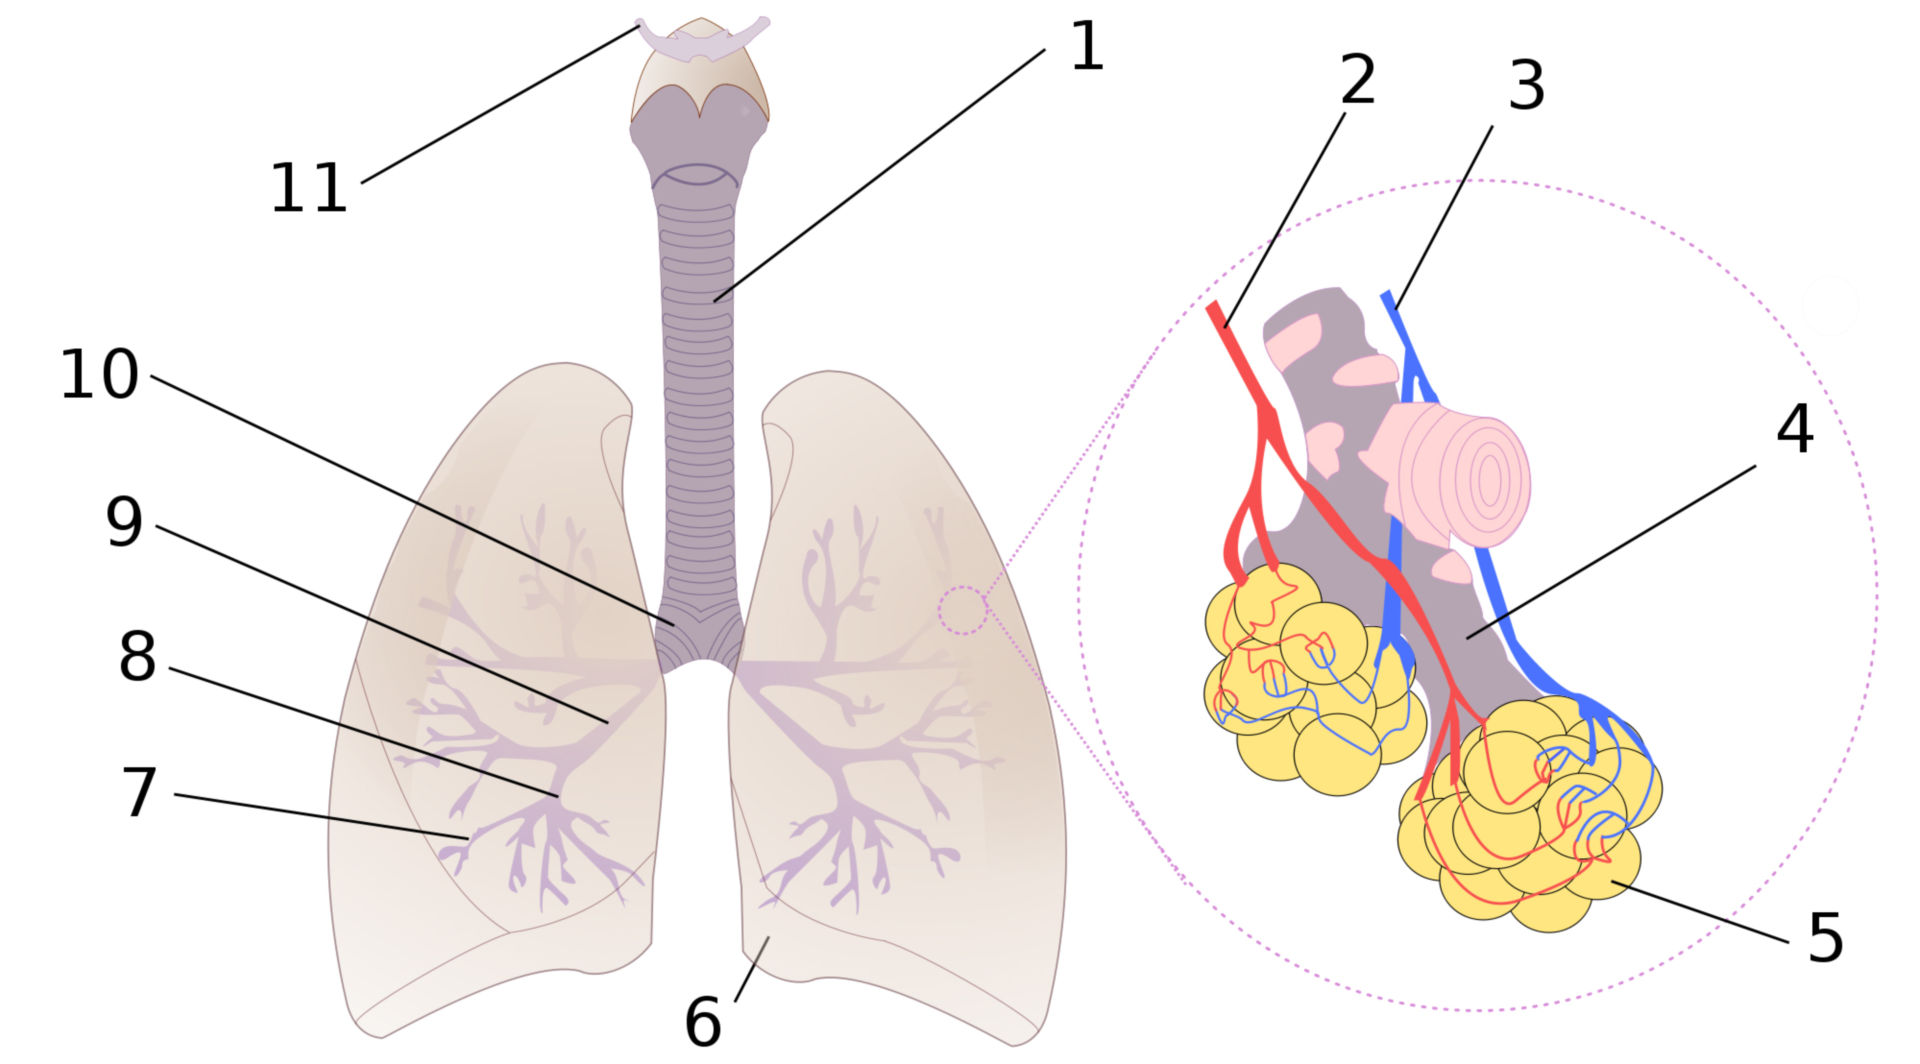 Schema der menschlichen Lunge